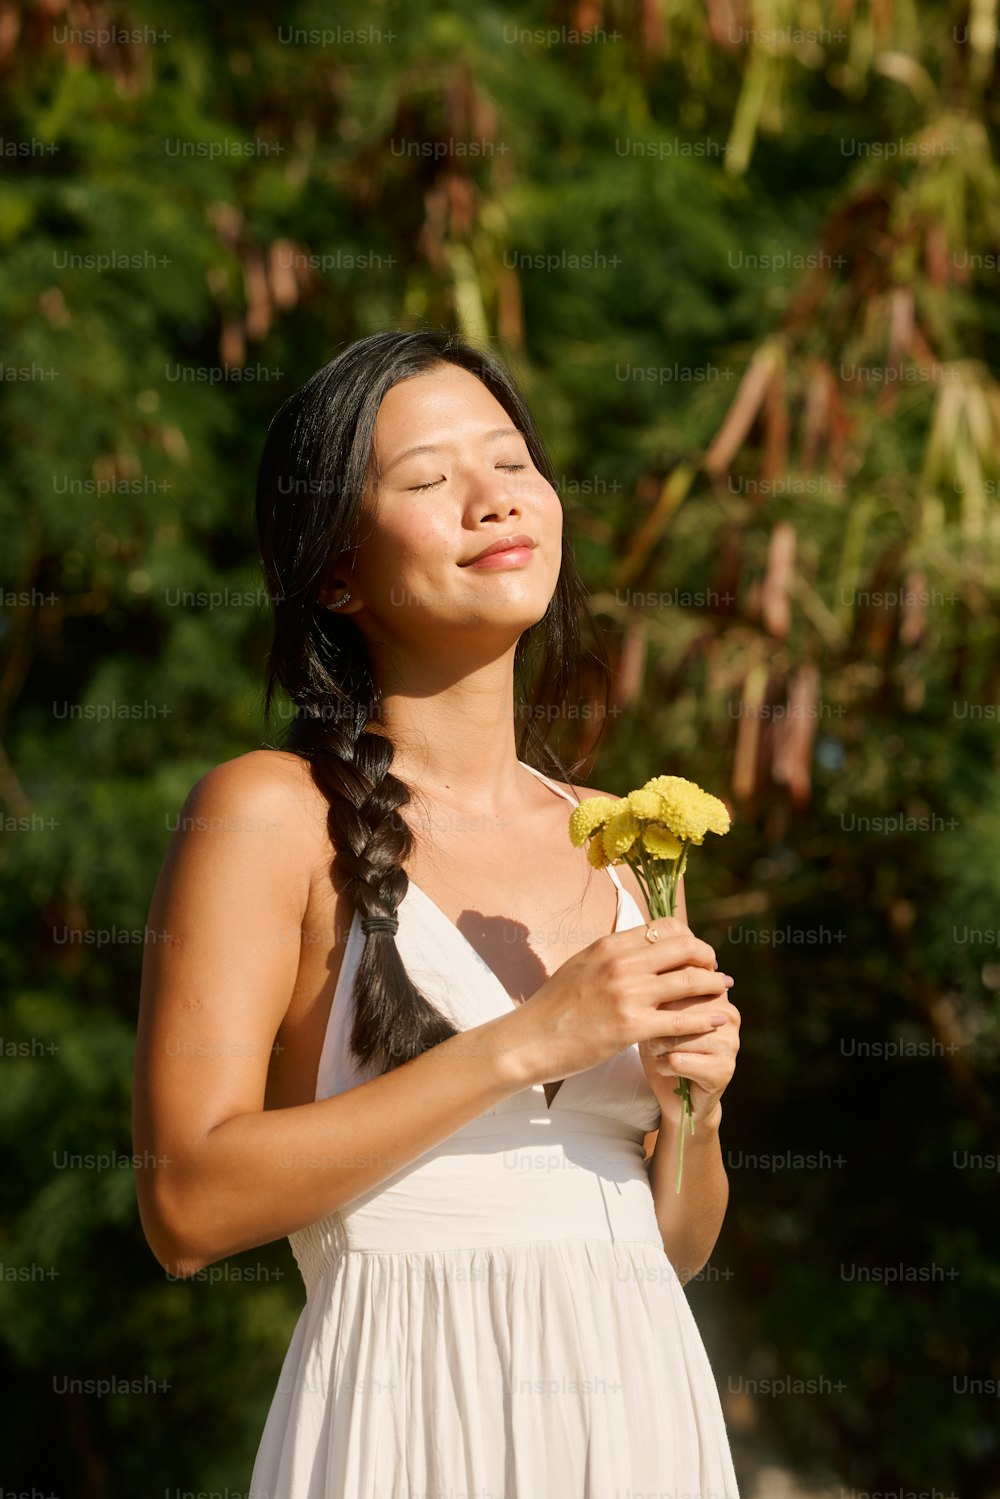 una mujer con un vestido blanco sosteniendo una flor amarilla